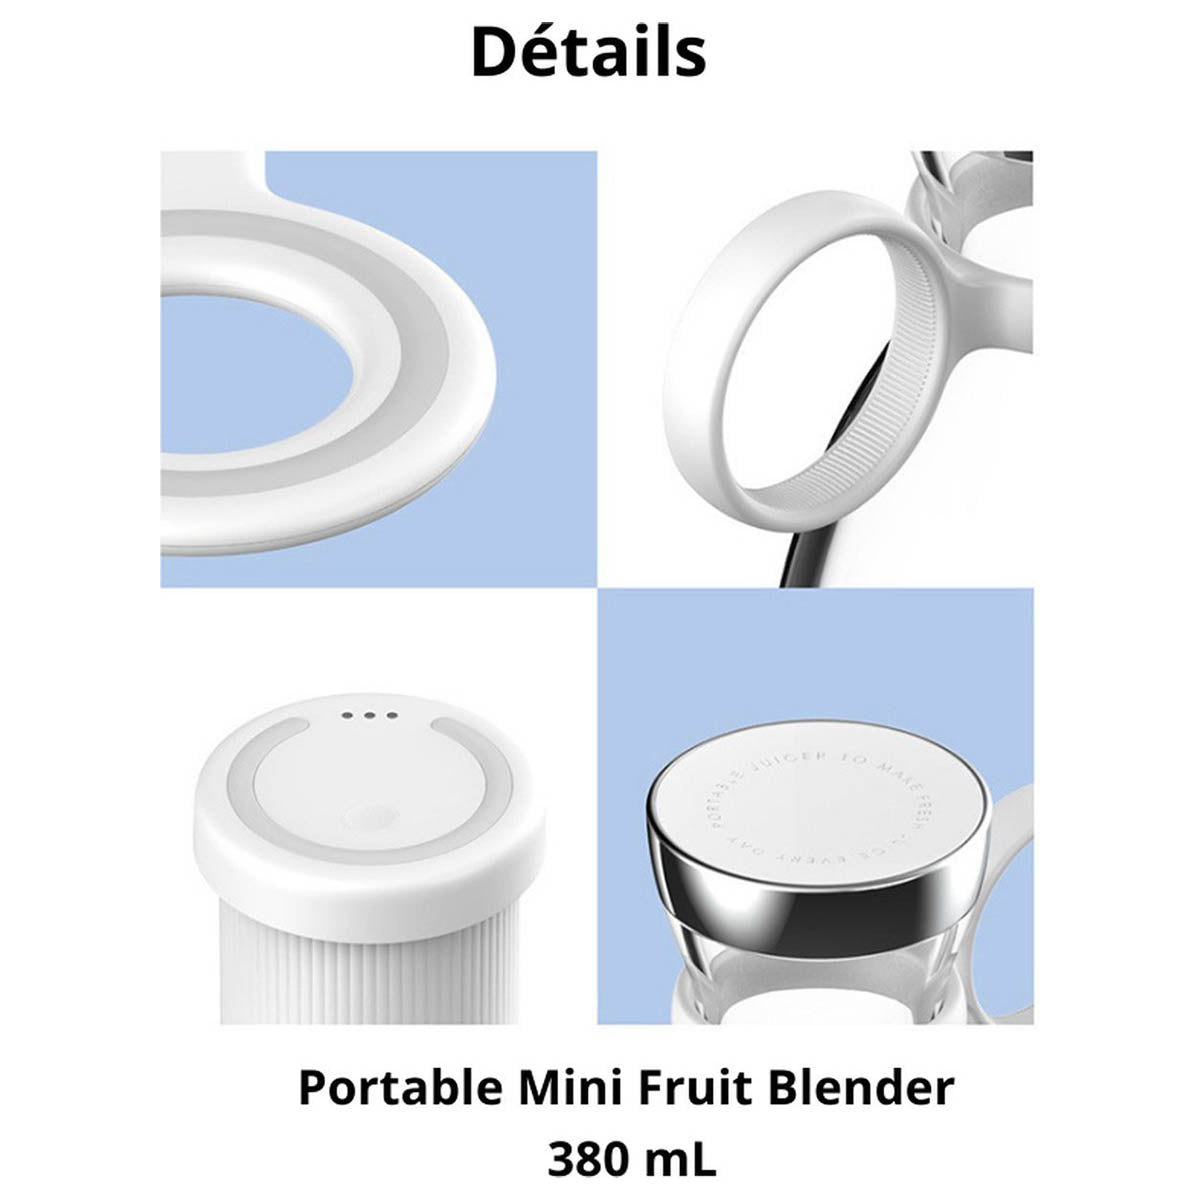 Ariko Tragbarer Mixer – Mini-Mixer für unterwegs – Smoothie-Mixer – Babynahrung – Frische Säfte – 350 ml – Magnetisches USB-Ladegerät – Pink